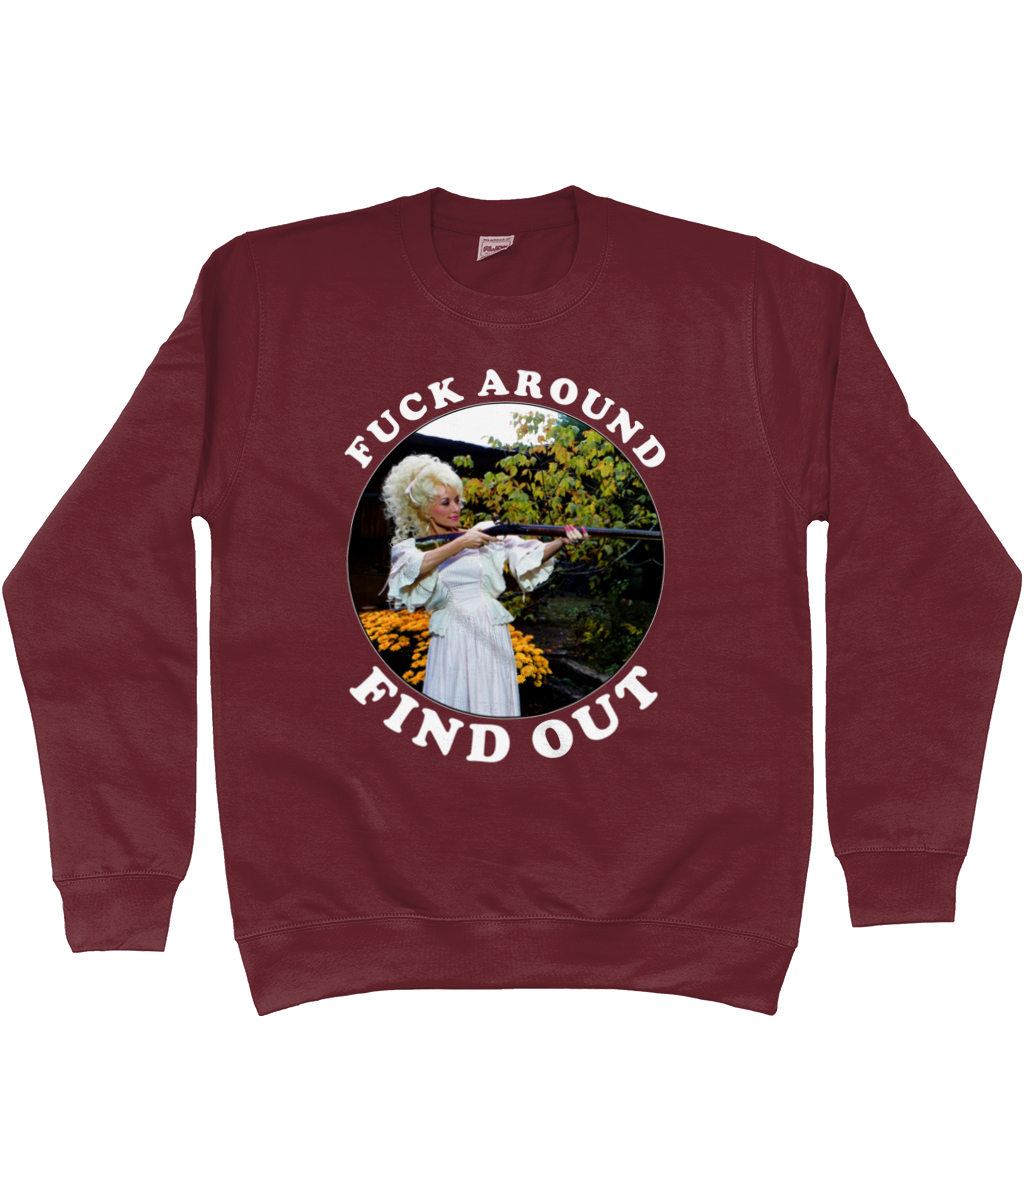 Fuck Around Find Out - White Text - Sweatshirt